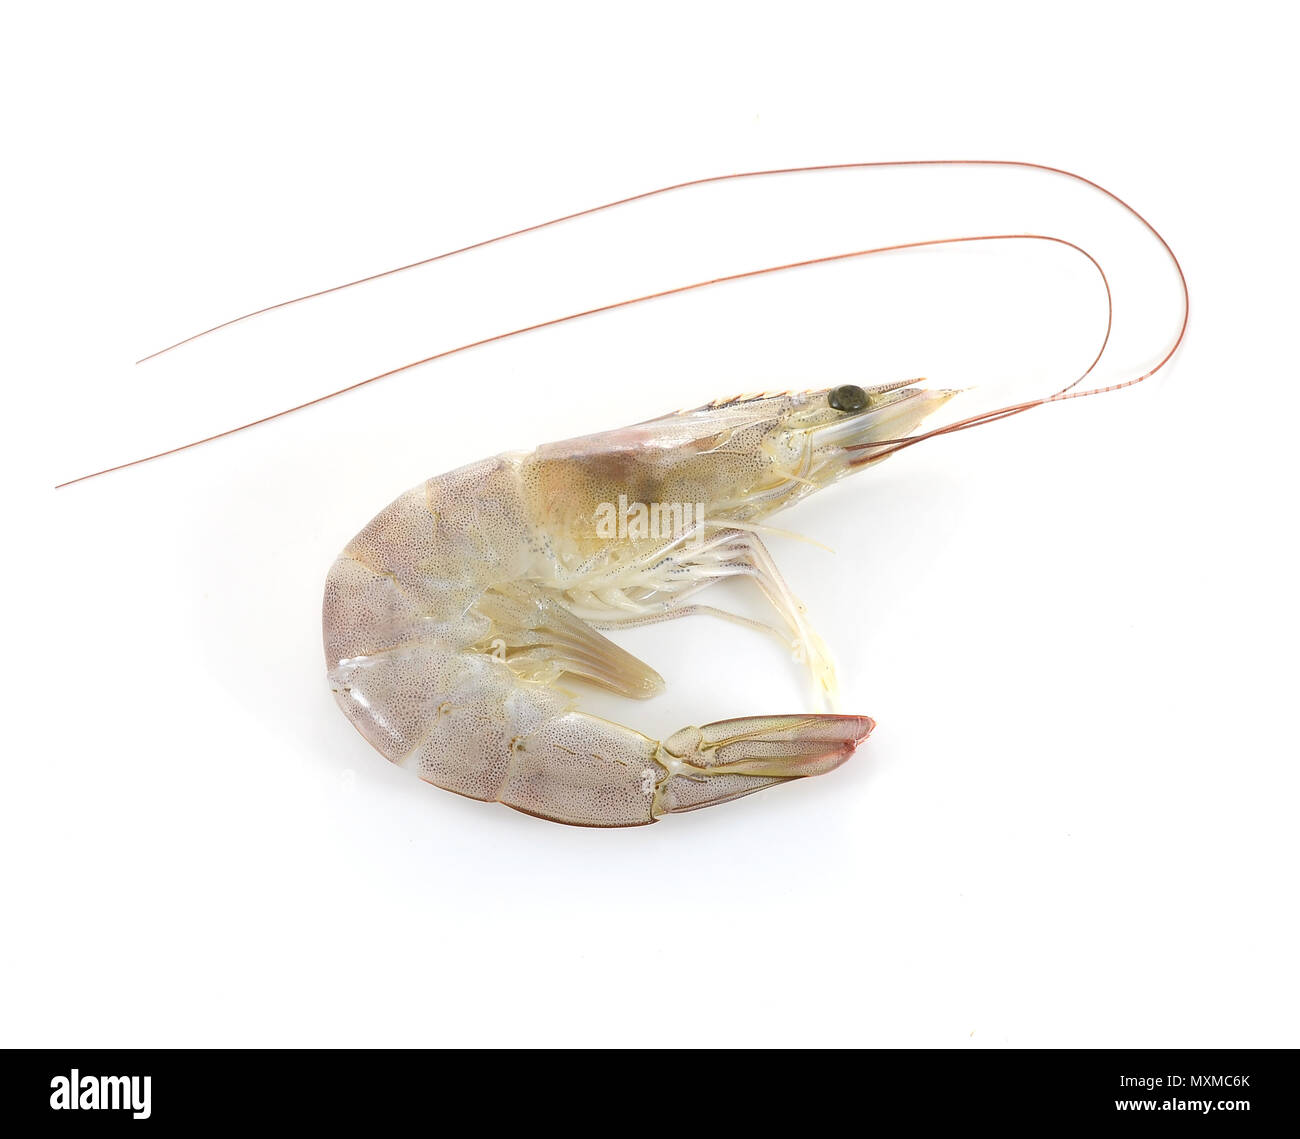 shrimps on white background Stock Photo